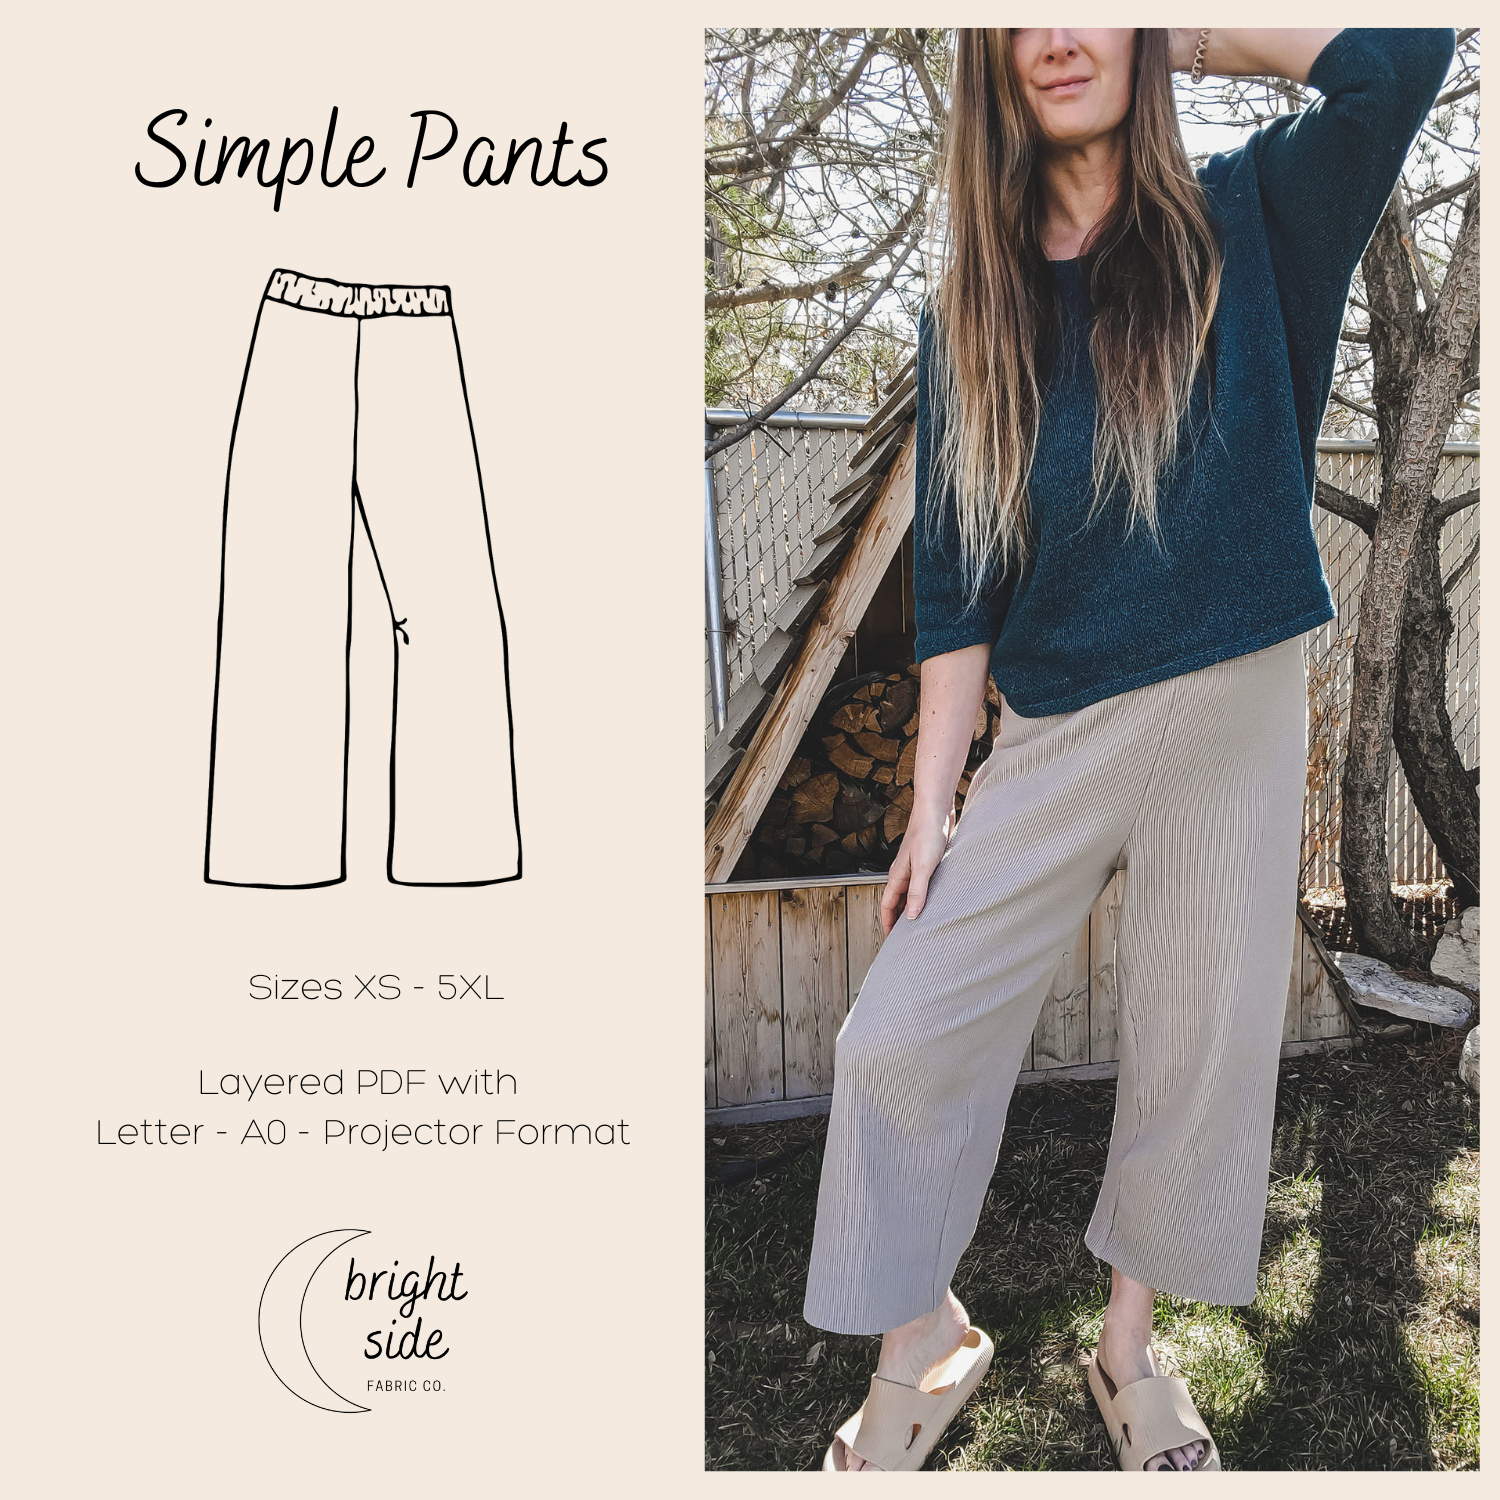 Le patron de couture de pantalon simple – Brightside Fabric Co